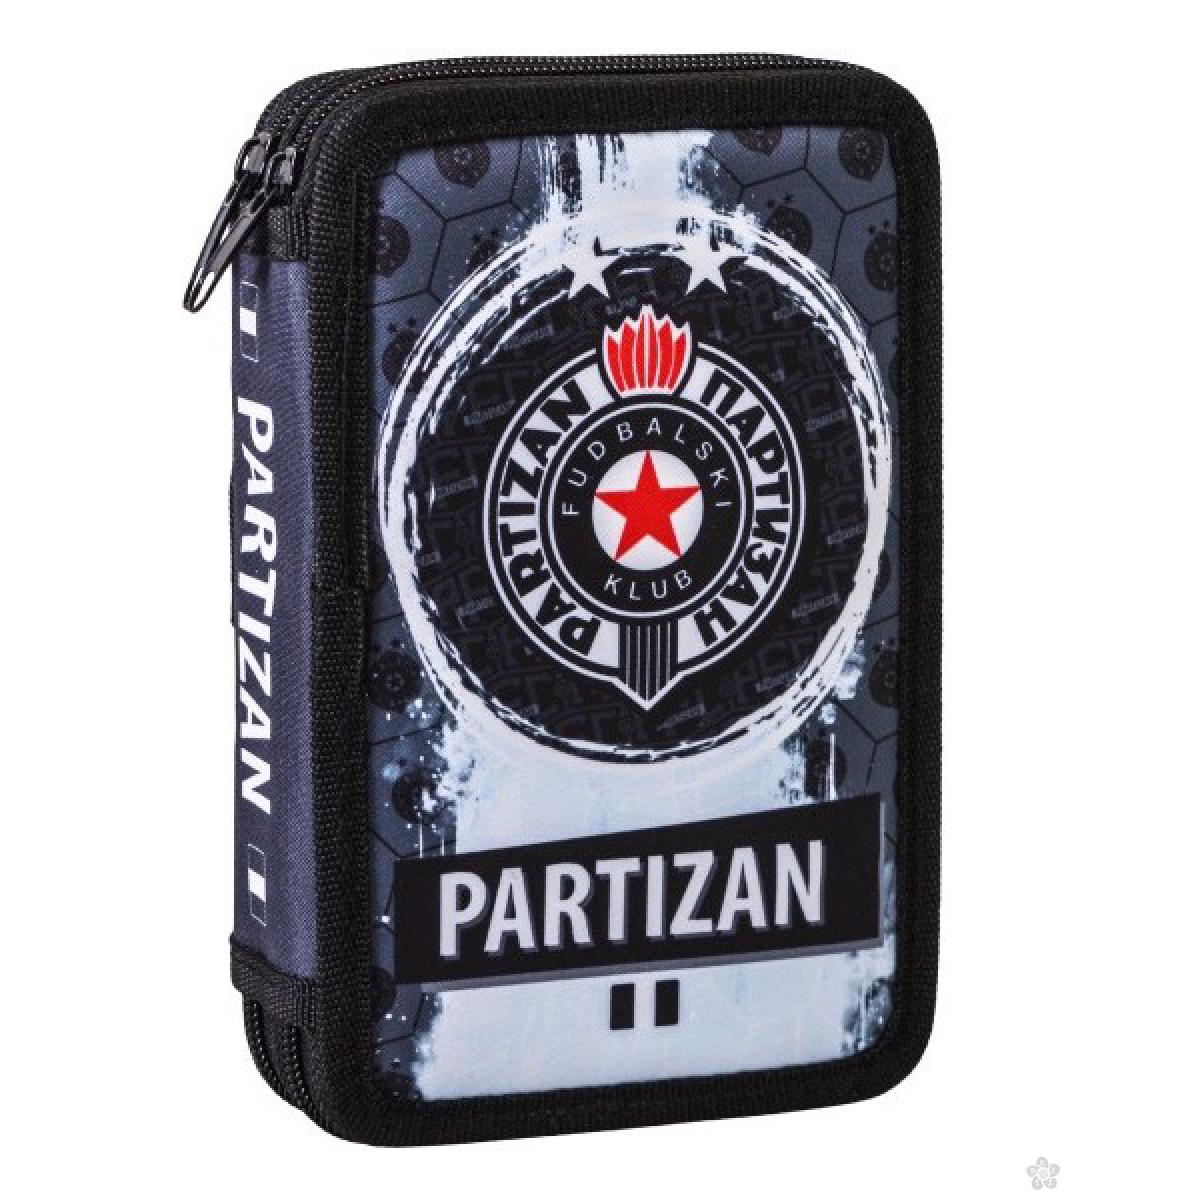 Pernica puna 2 zipa, Double Decker Partizan 301441 